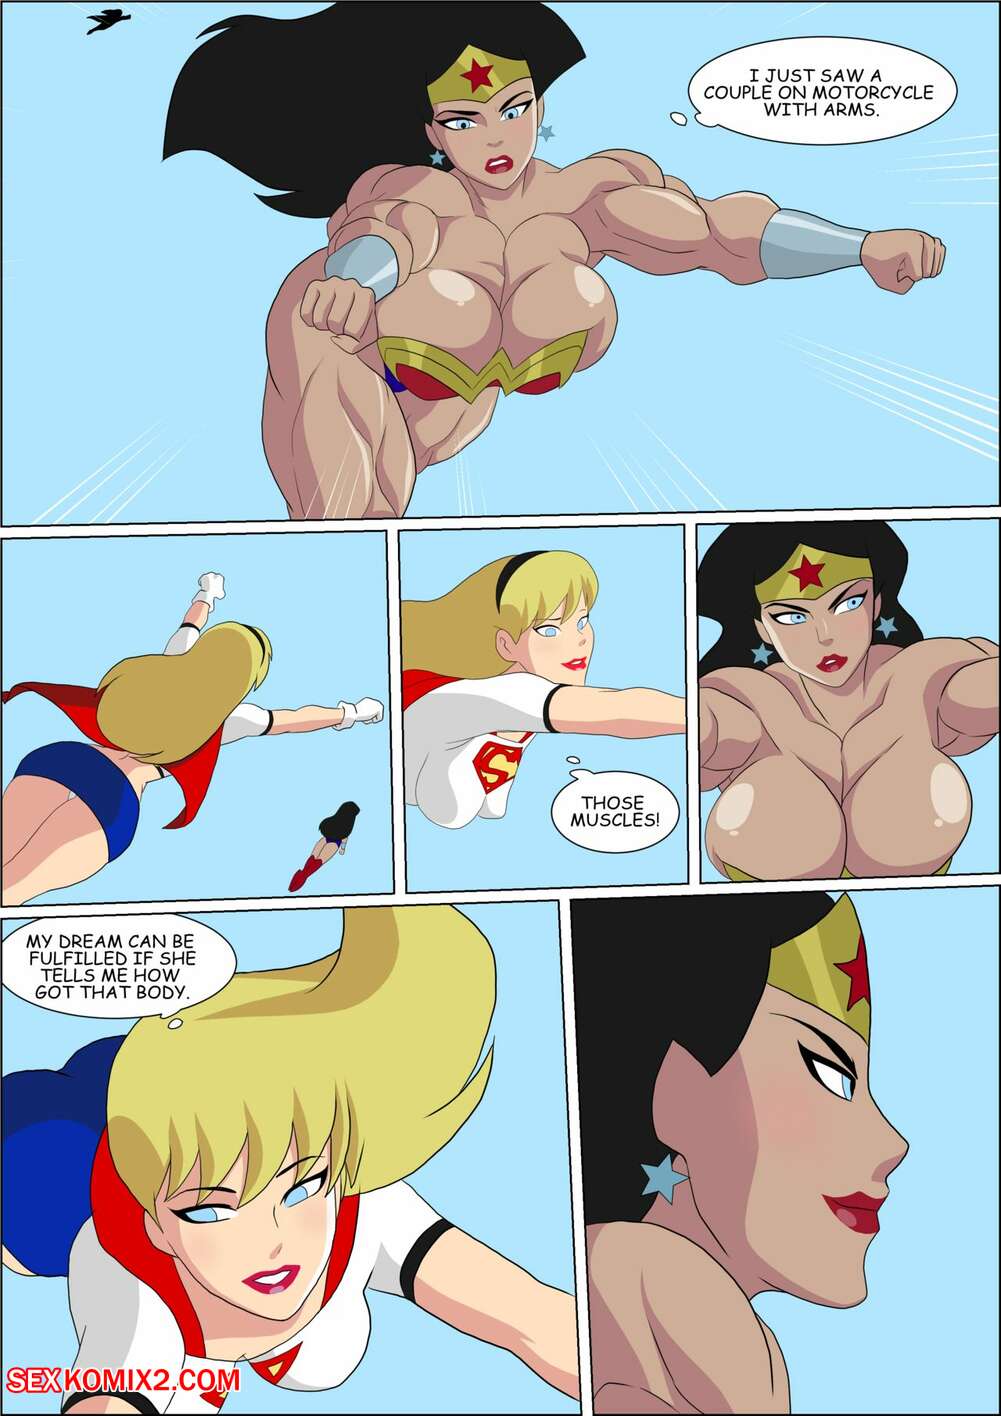 Best of Super hero women porn